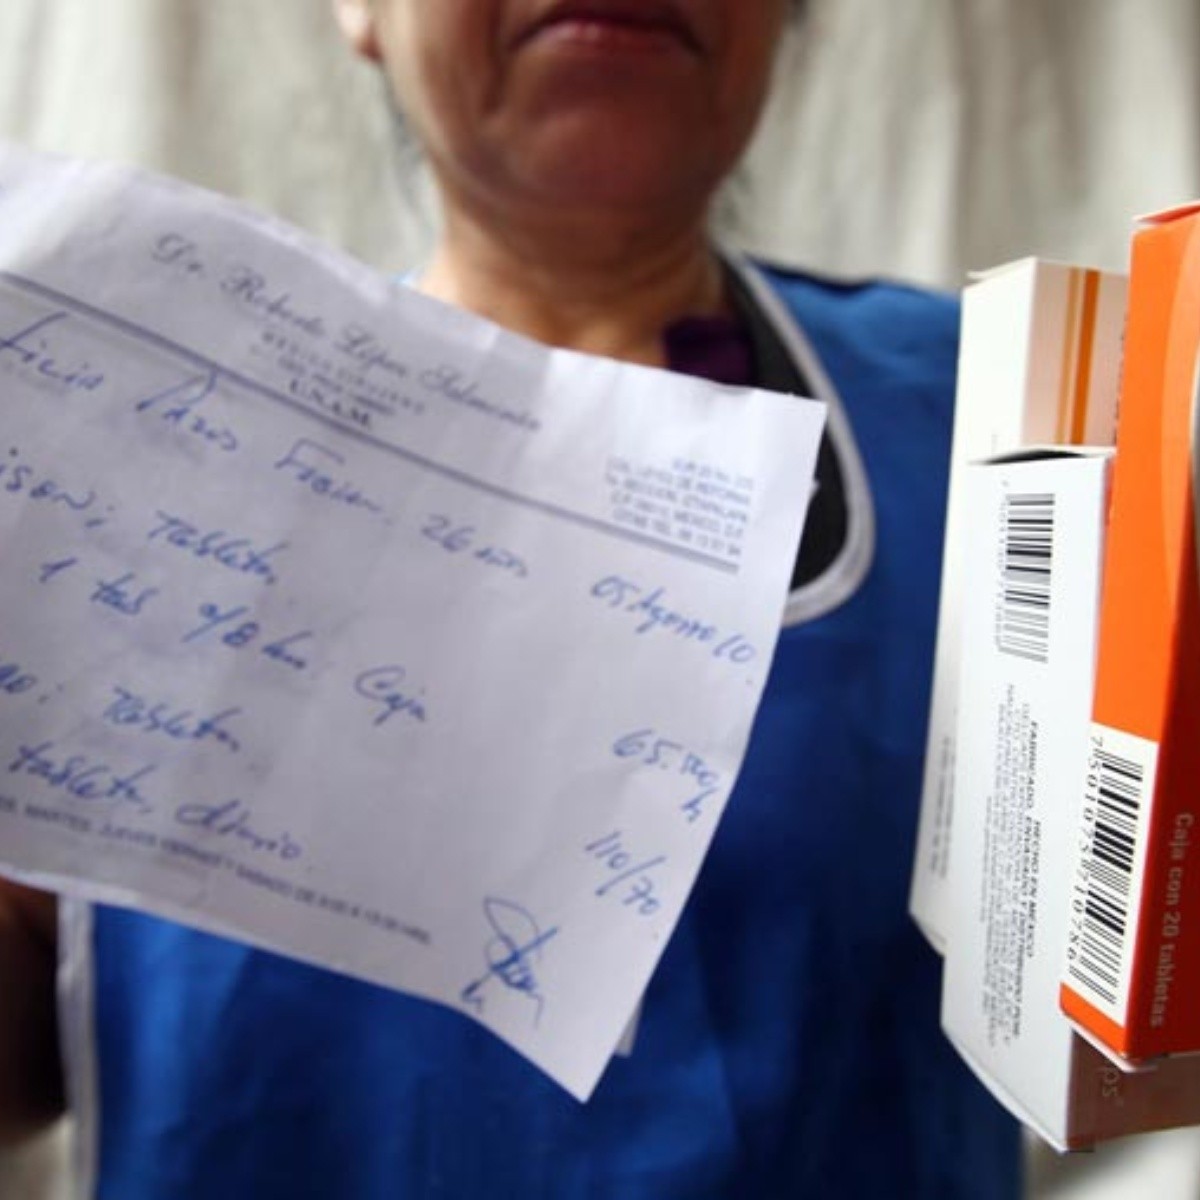 Multa por 877 mil pesos a farmacias infractoras | El Informador